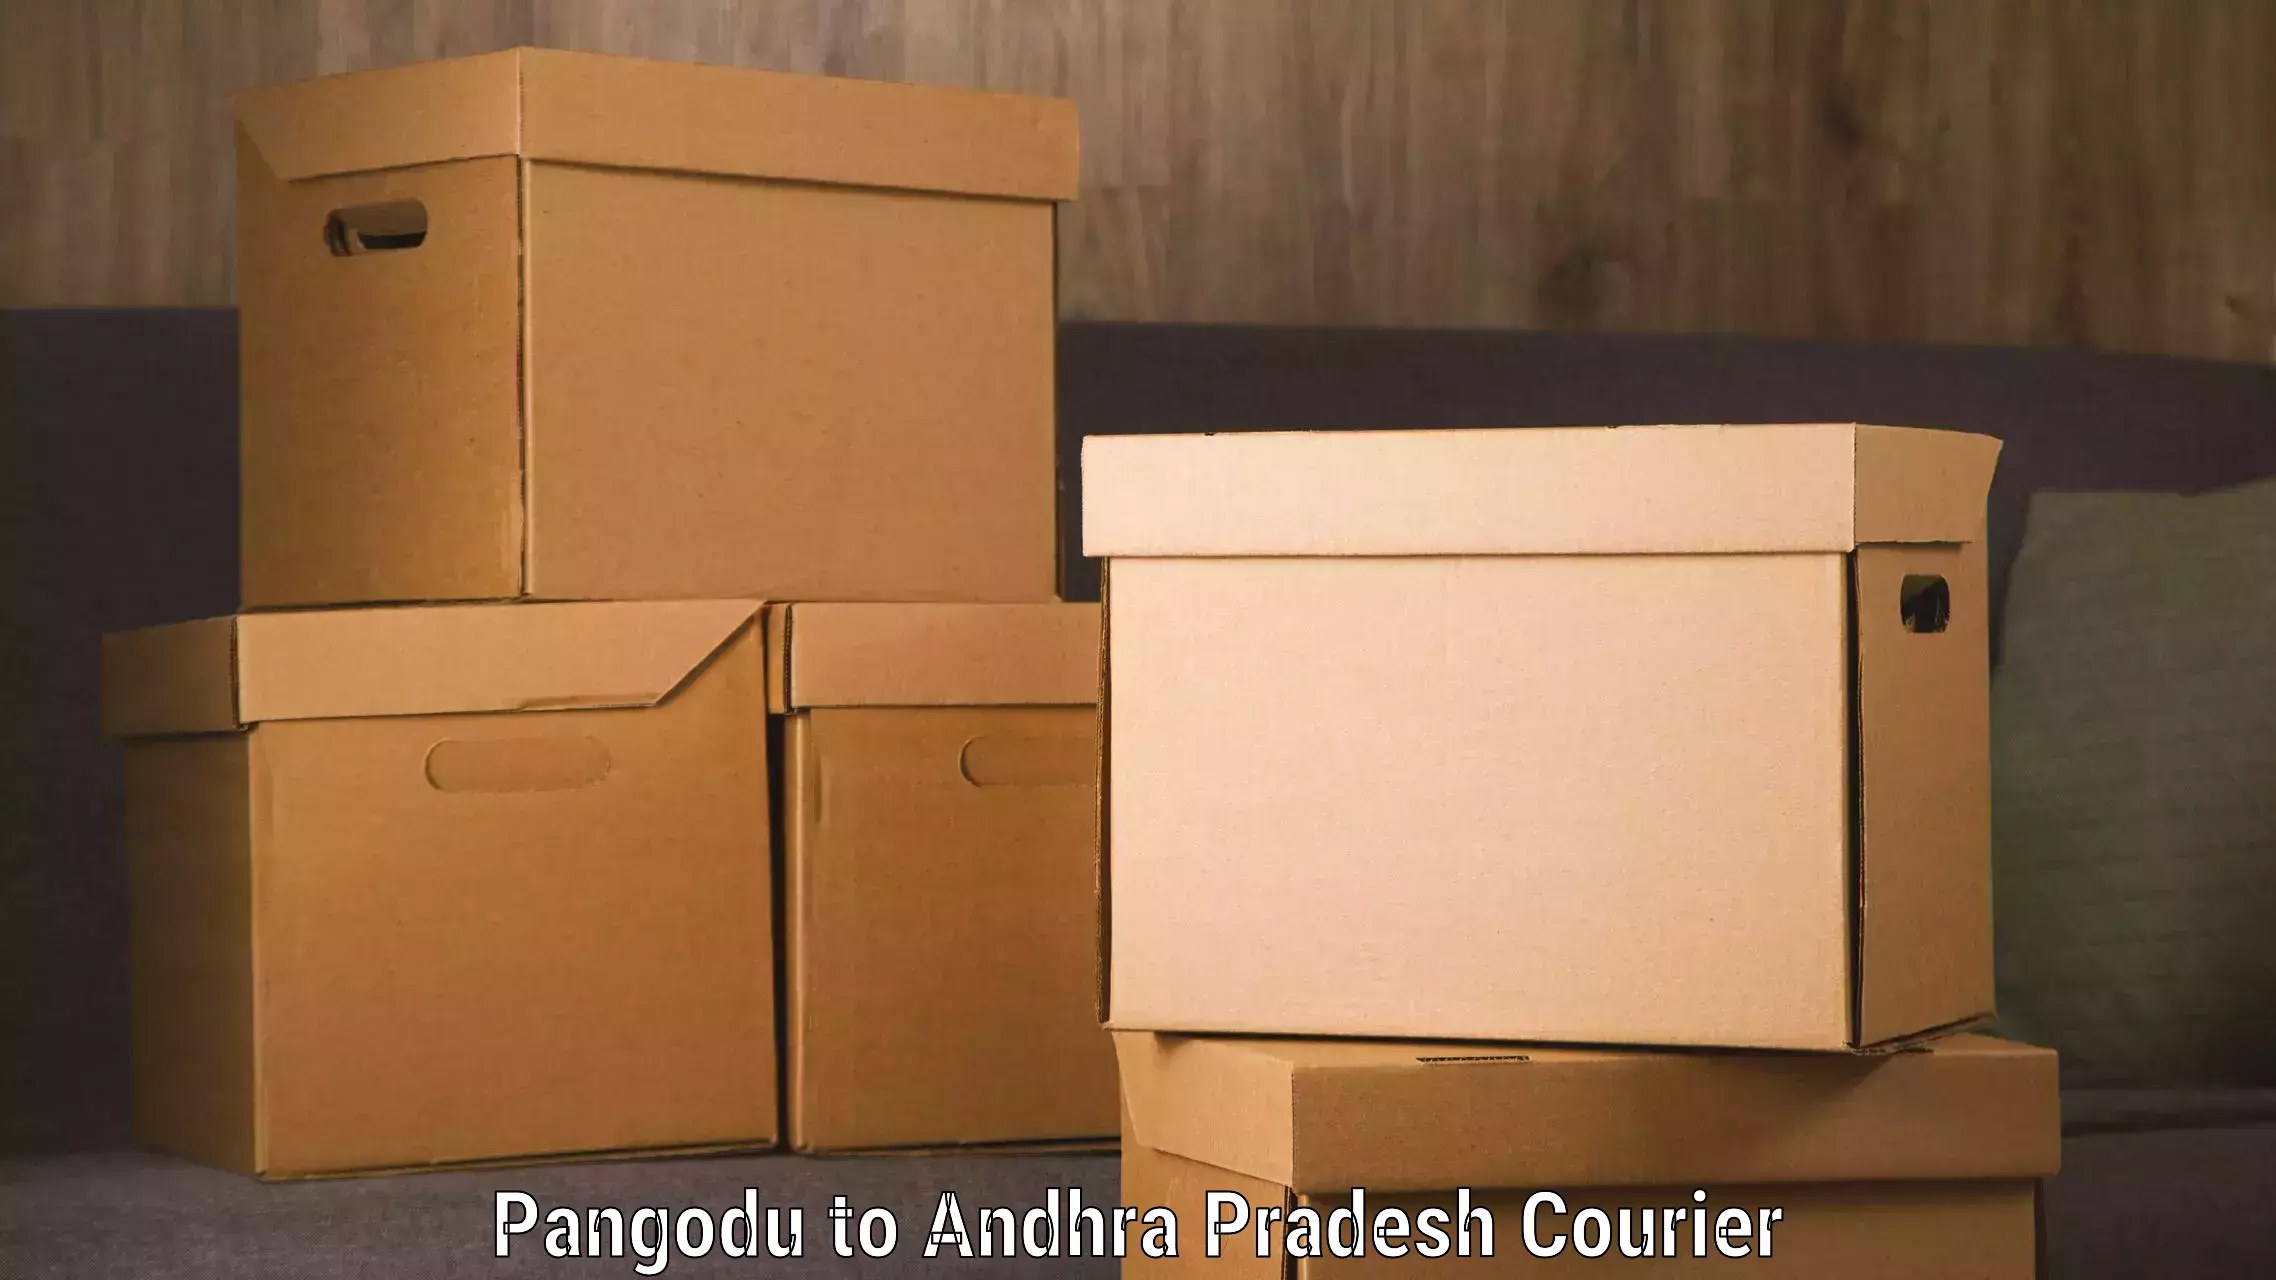 High-speed parcel service Pangodu to Mangalagiri